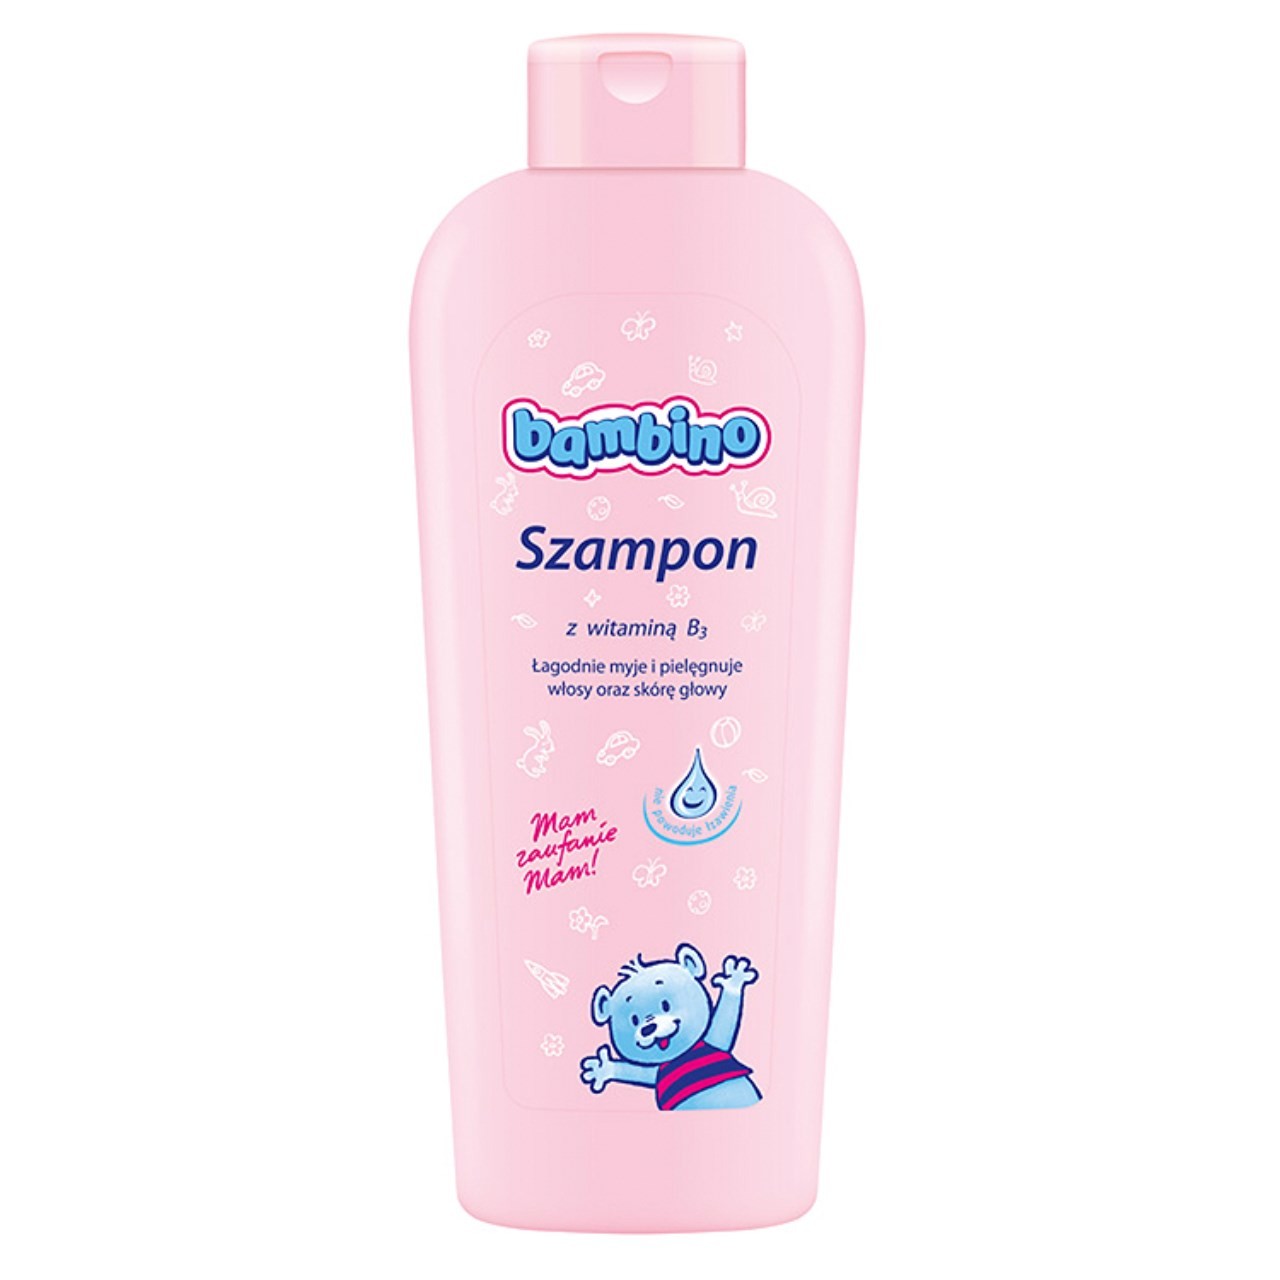 szampon dla dzieci czy dorosły może też używać